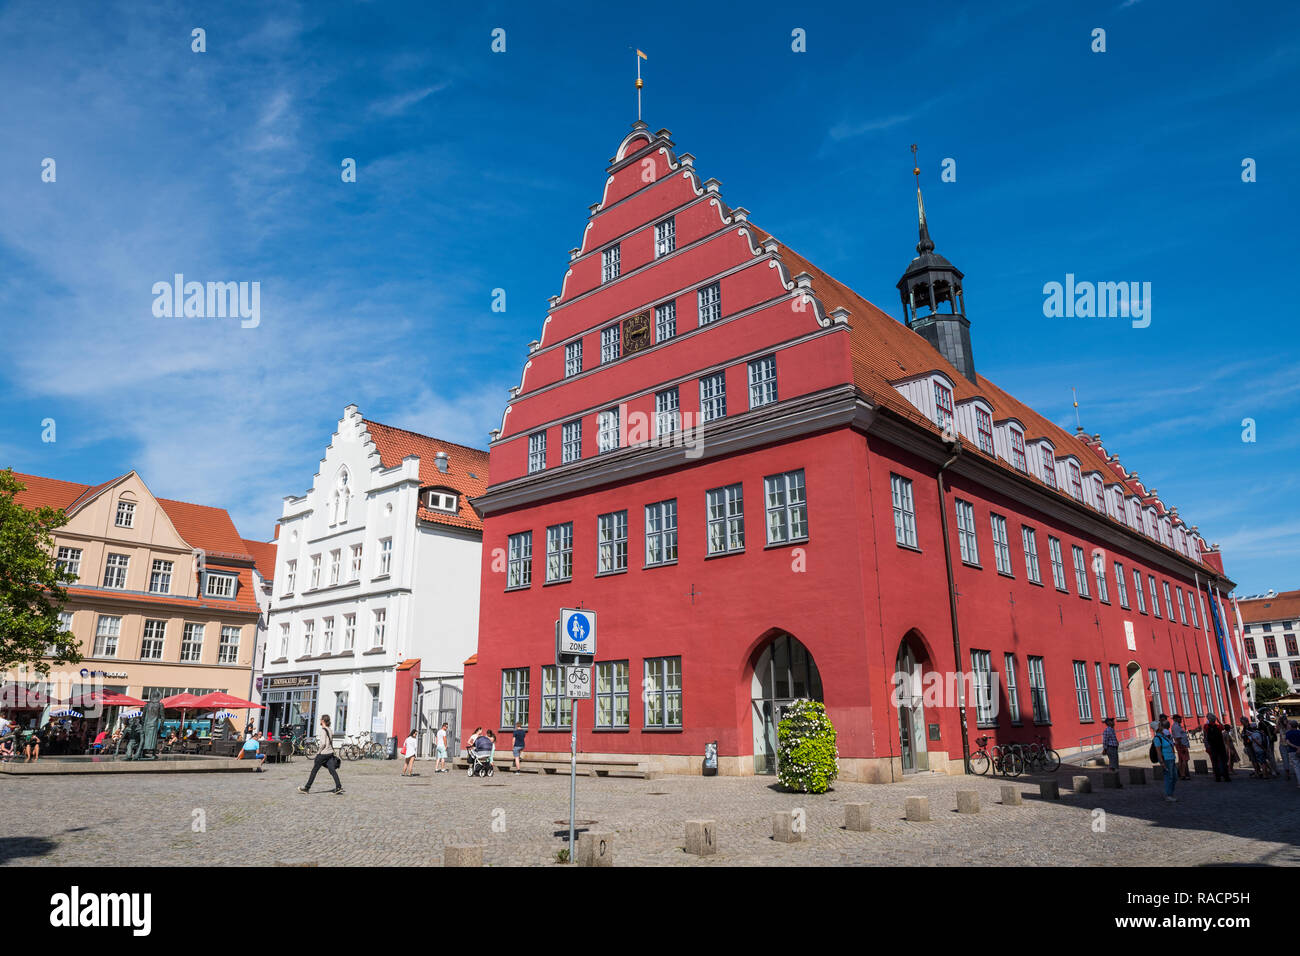 L'ancien hôtel de ville sur la place centrale du marché, Greifswald, Mecklenburg-Vorpommern, Allemagne, Europe Banque D'Images